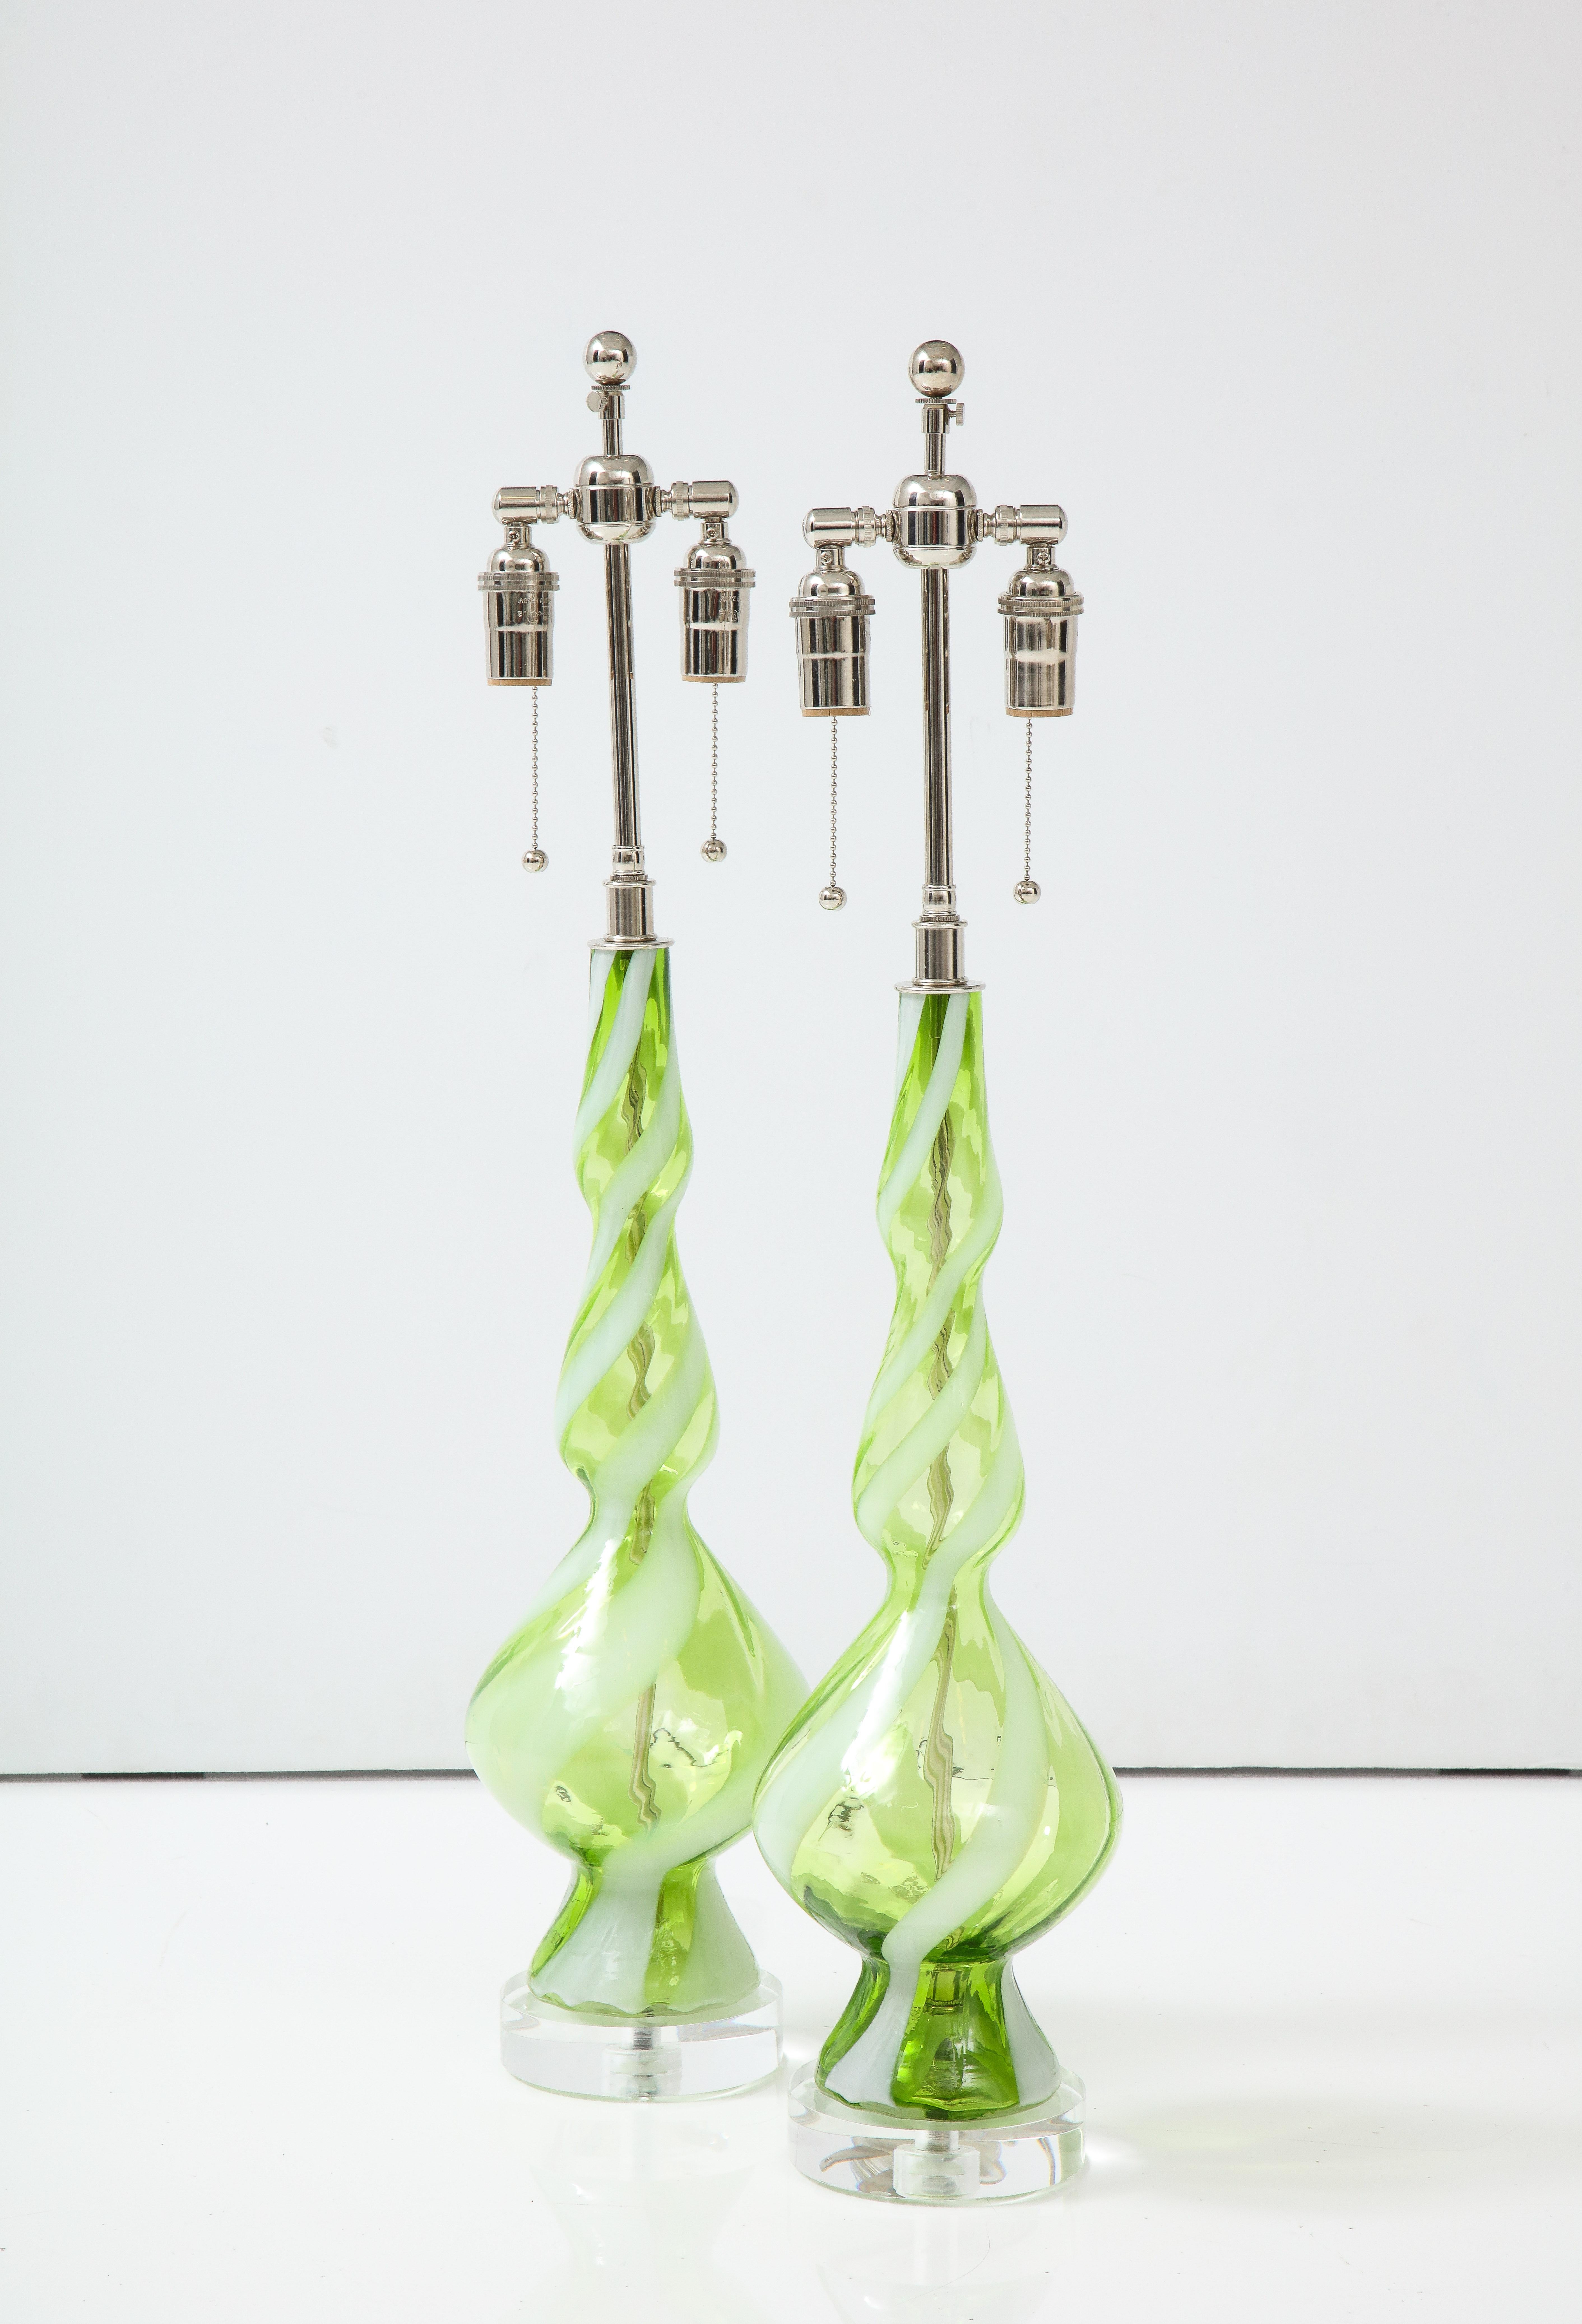 Paar Murano-Glaslampen aus der Mitte des Jahrhunderts in Sherbet Green mit kontrastierenden
weiße Spiralen.
Die Lampen sitzen auf 1,25 